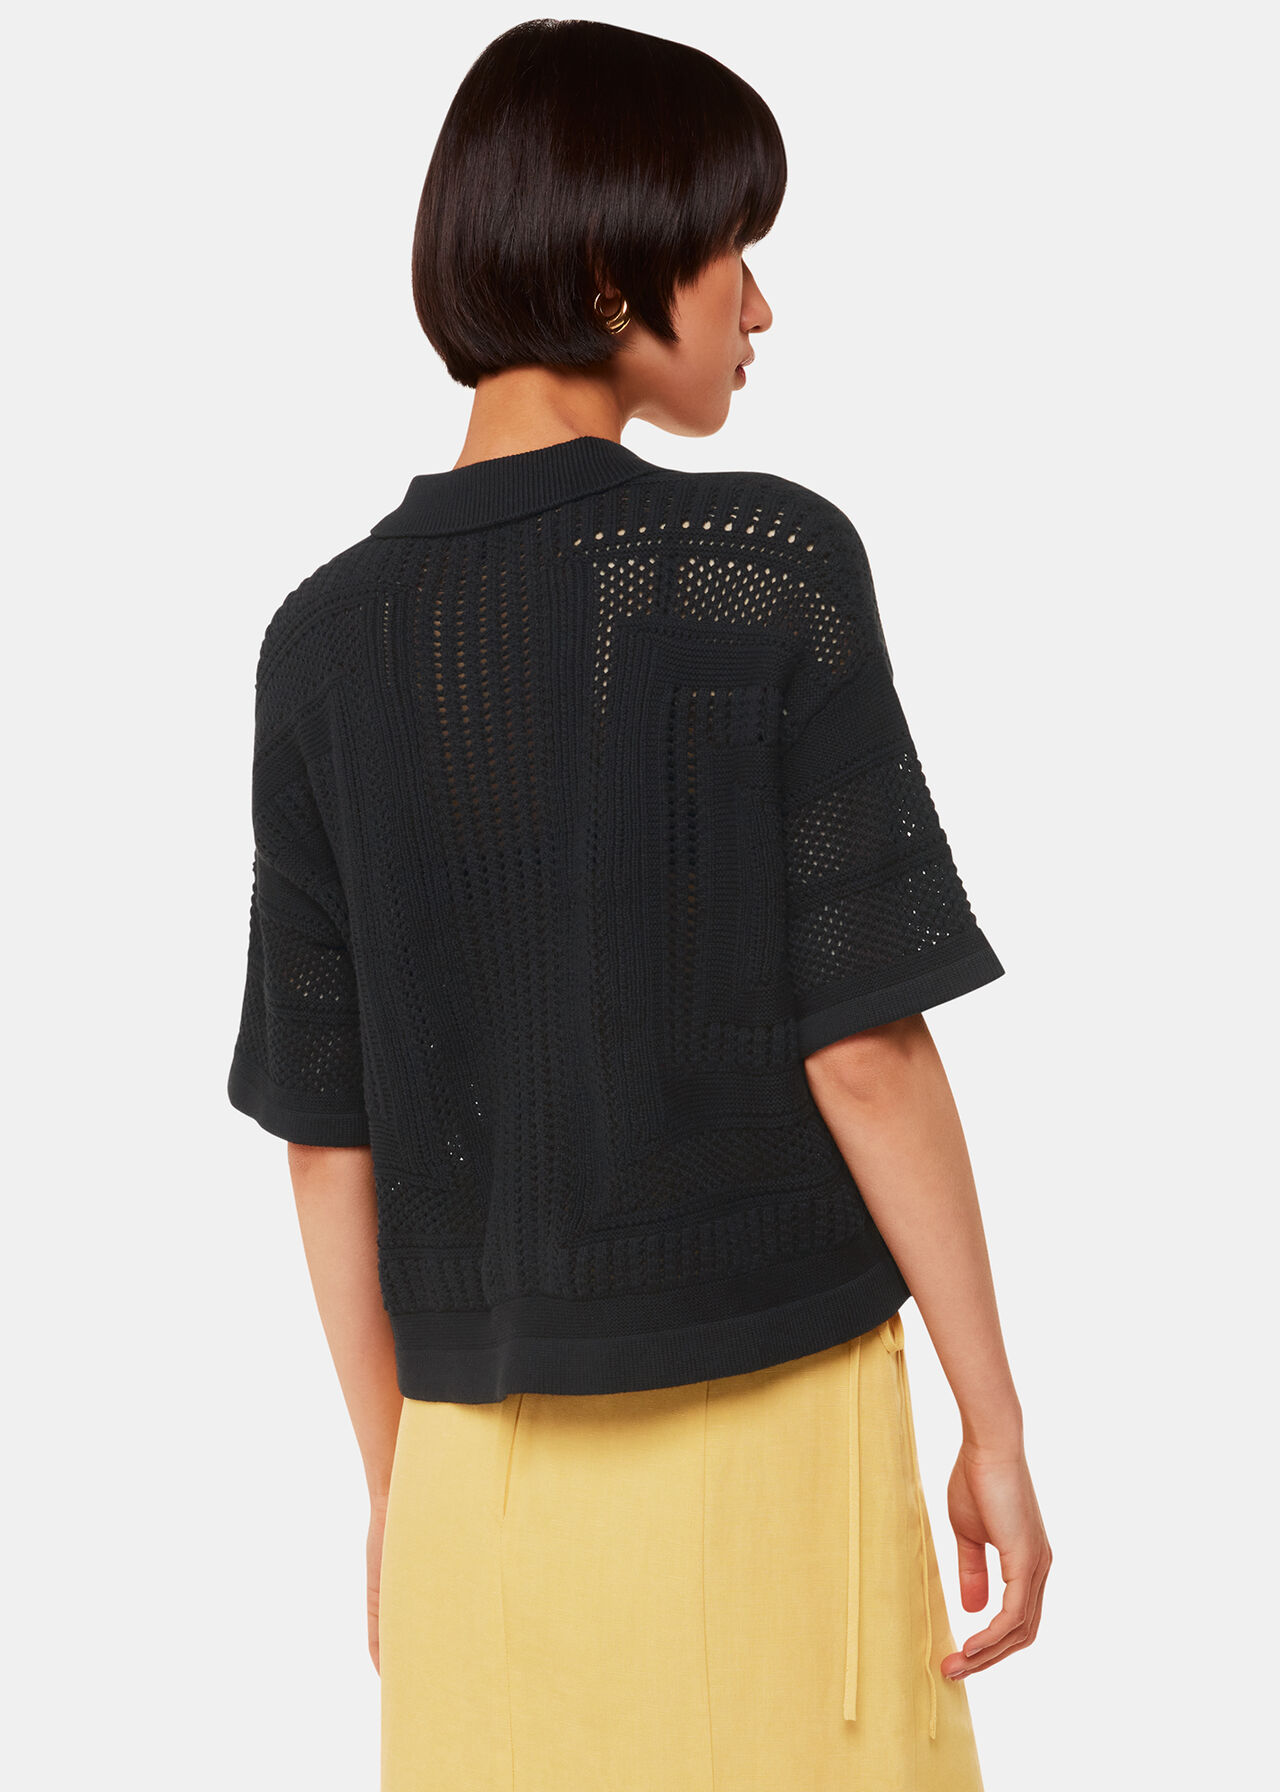 Crochet Knitted Shirt